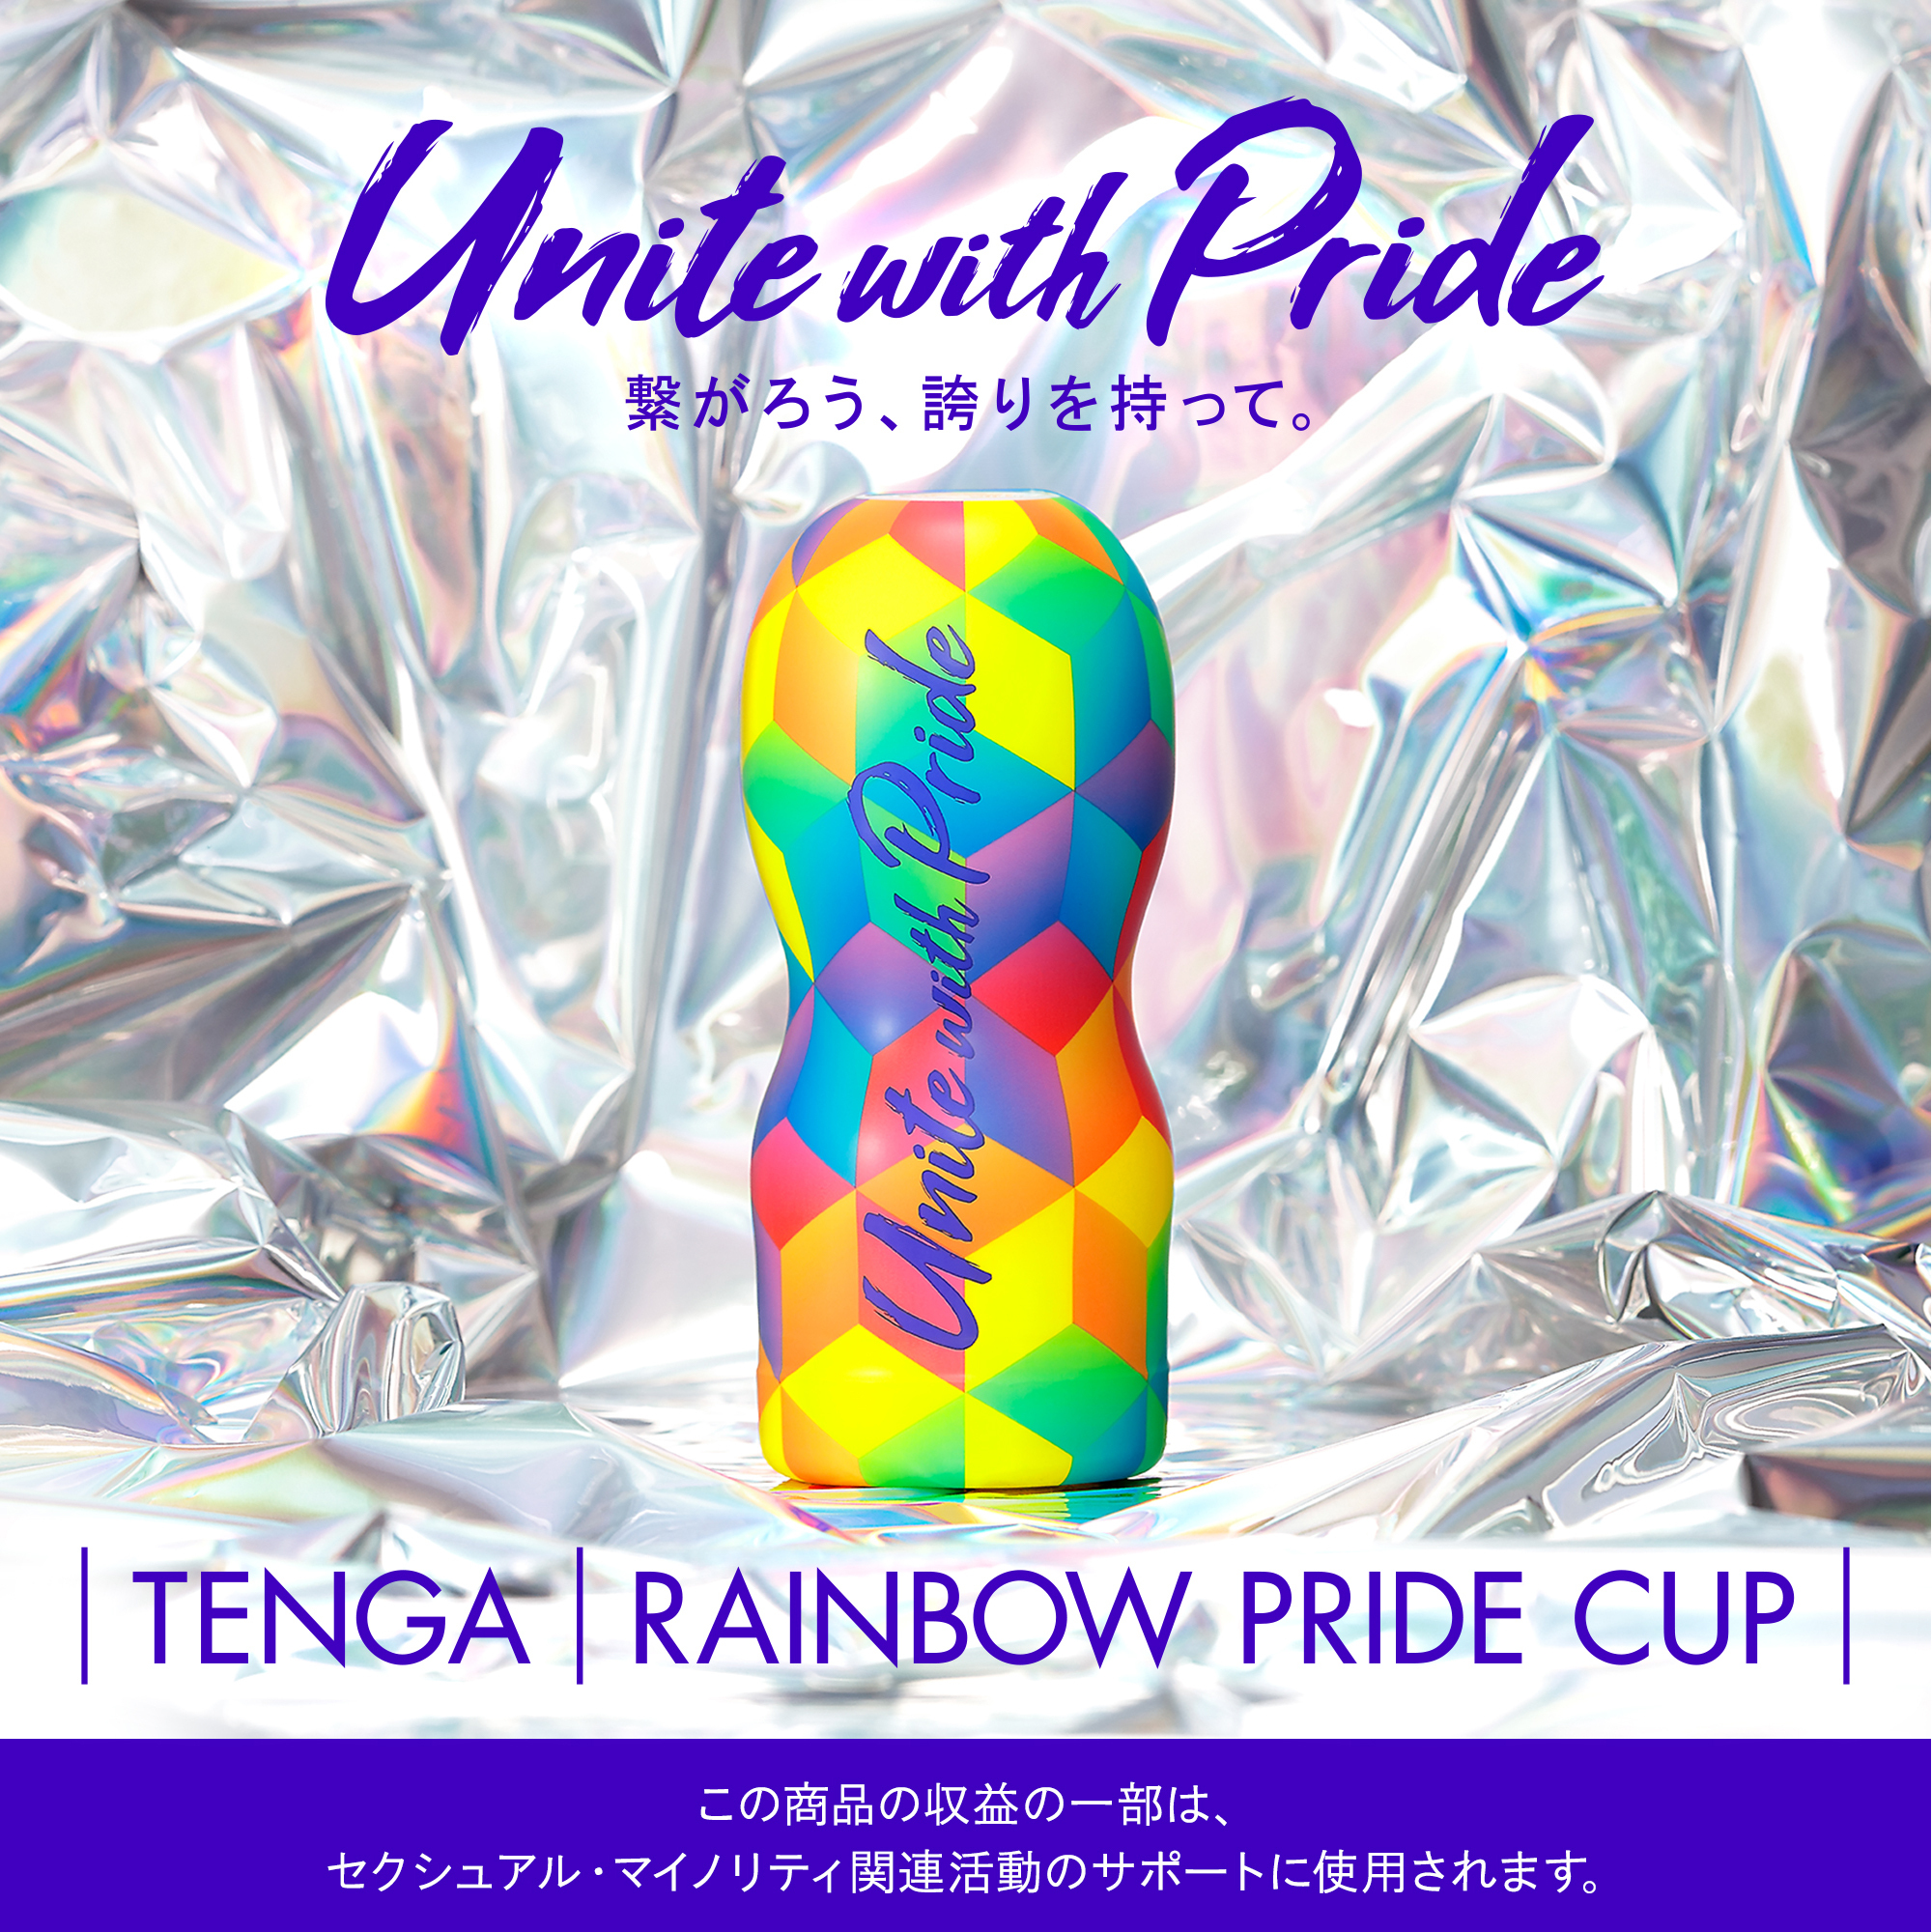 TENGA RAINBOW PRIDE CUP 2019（テンガ レインボープライド カップ 2019）